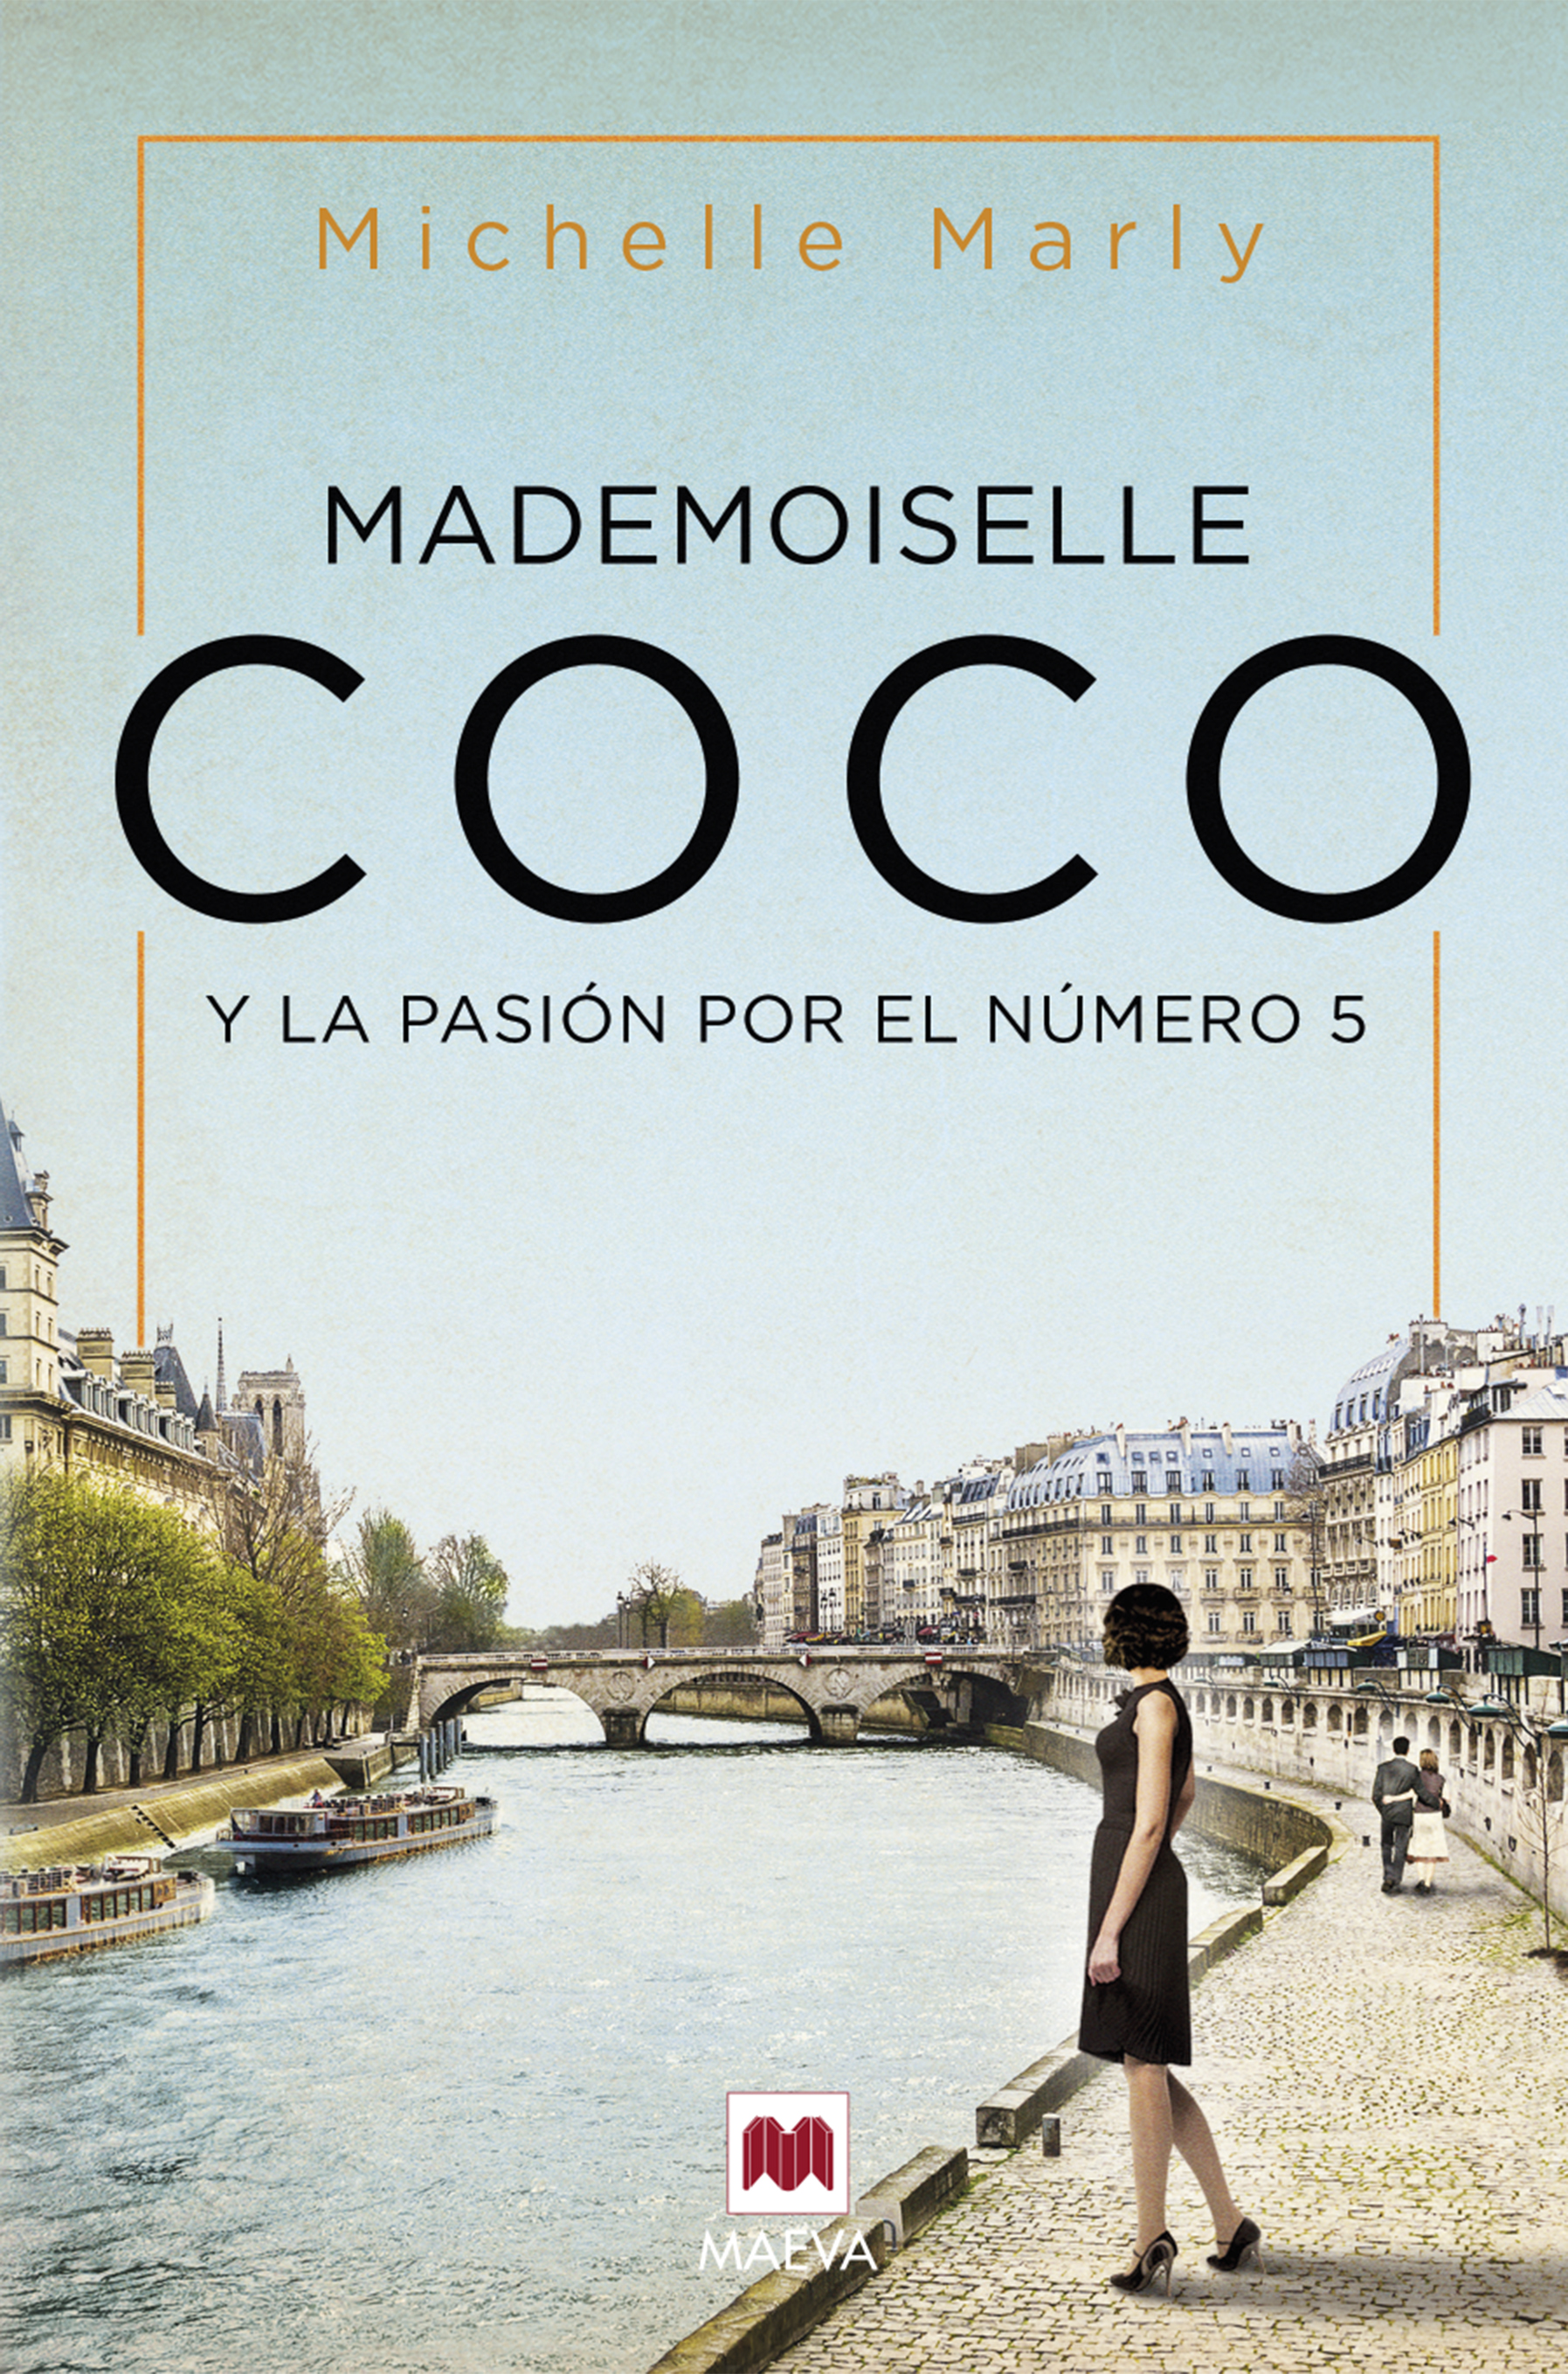 3 Dupes de Coco Mademoiselle que SI VALEN LA PENA 👌 / Vistiendo Aromas 